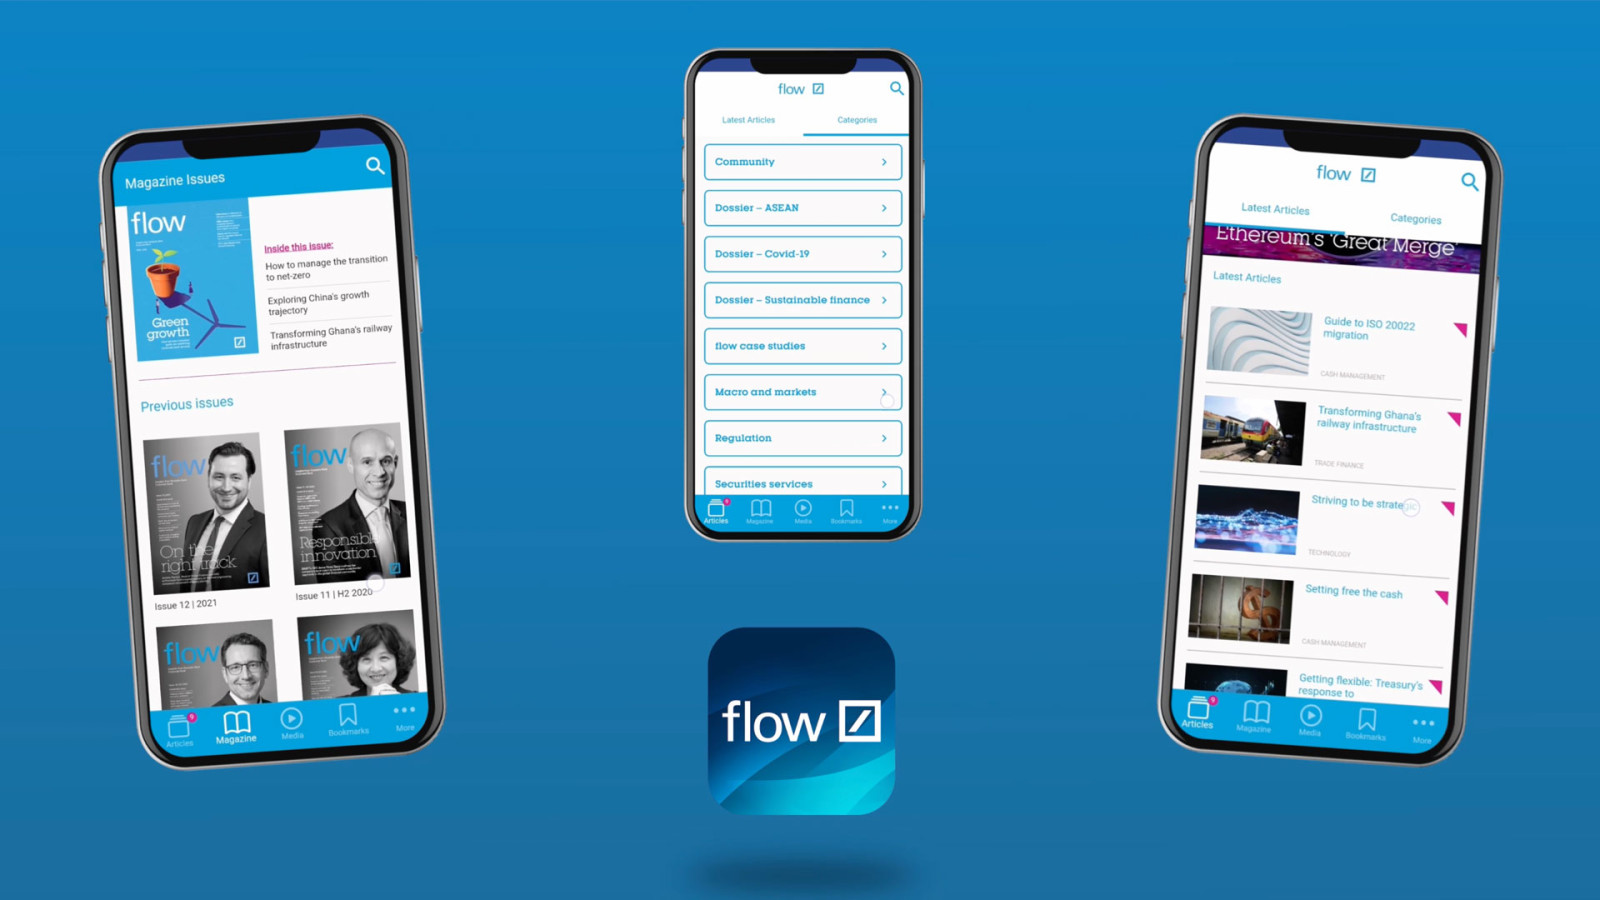 Deutsche Bank flow app interface imagery